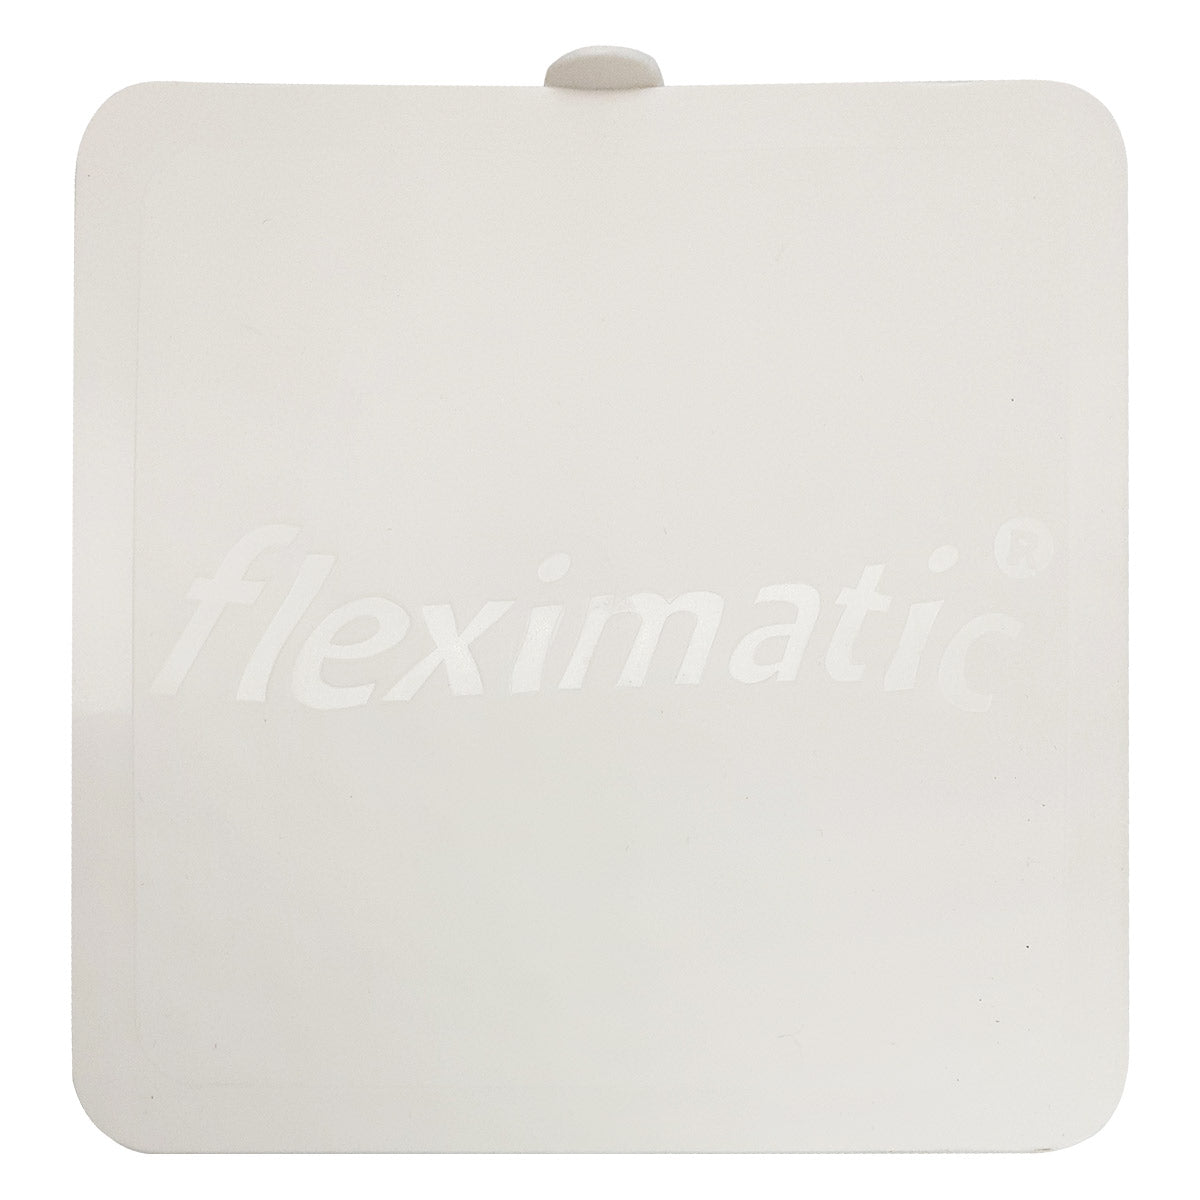 Tapa Higienica Fleximatic 2145 Cuadrada Blanca Para Coladera FLEXIMATIC Ferreabasto